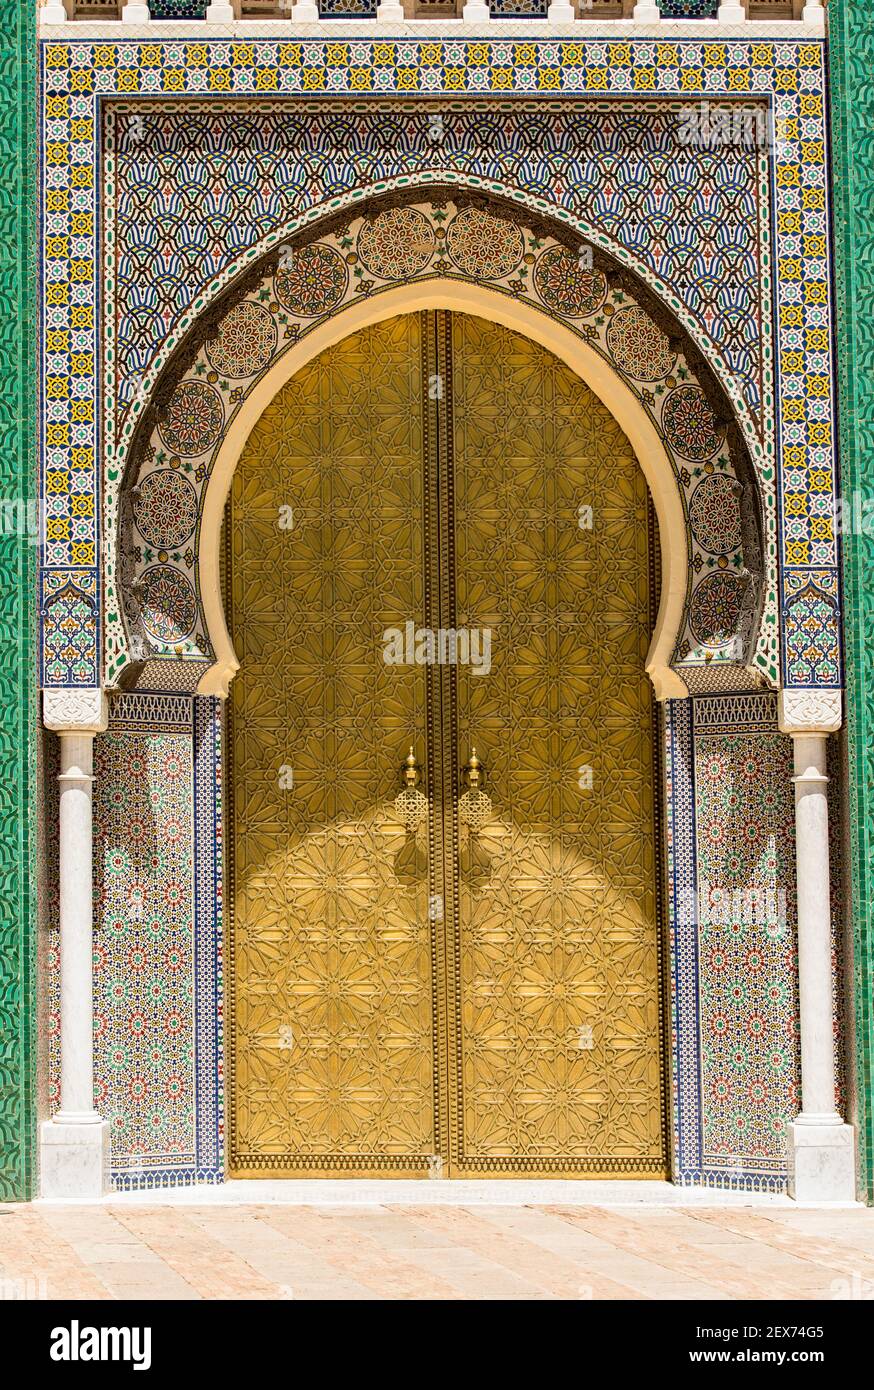 Marokko, Fez, dar el-Makhzen, Außenansicht des königlichen Palastes in Fez, maurische Architektur mit Messingtüren mit geometrischen Mustern Stockfoto